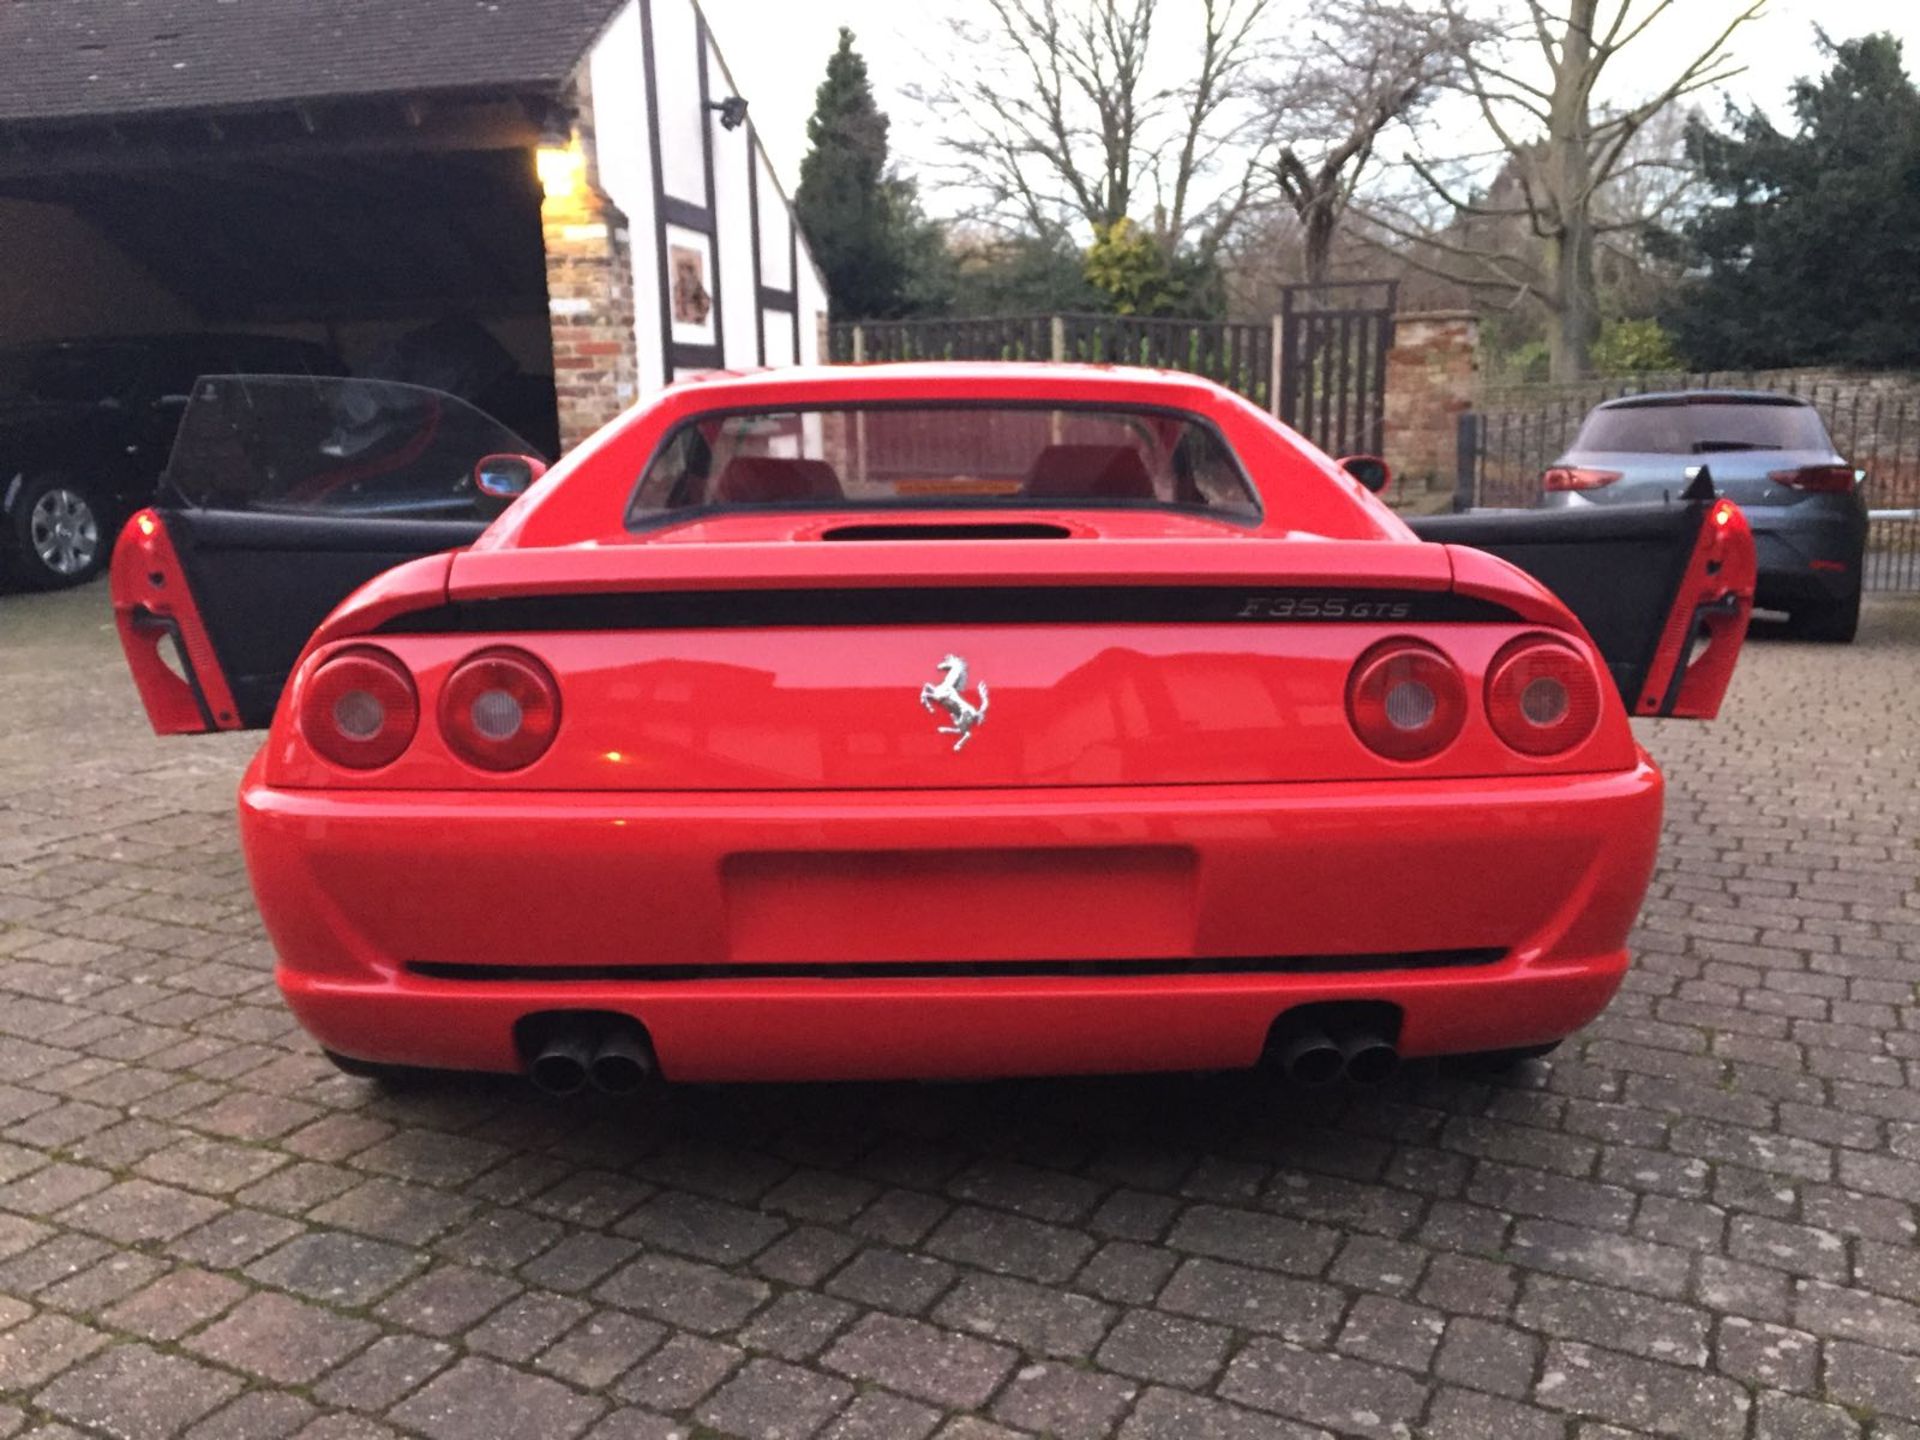 RHD 1996 Ferrari 355 GTS (Rare Manual Targa) - Image 10 of 40